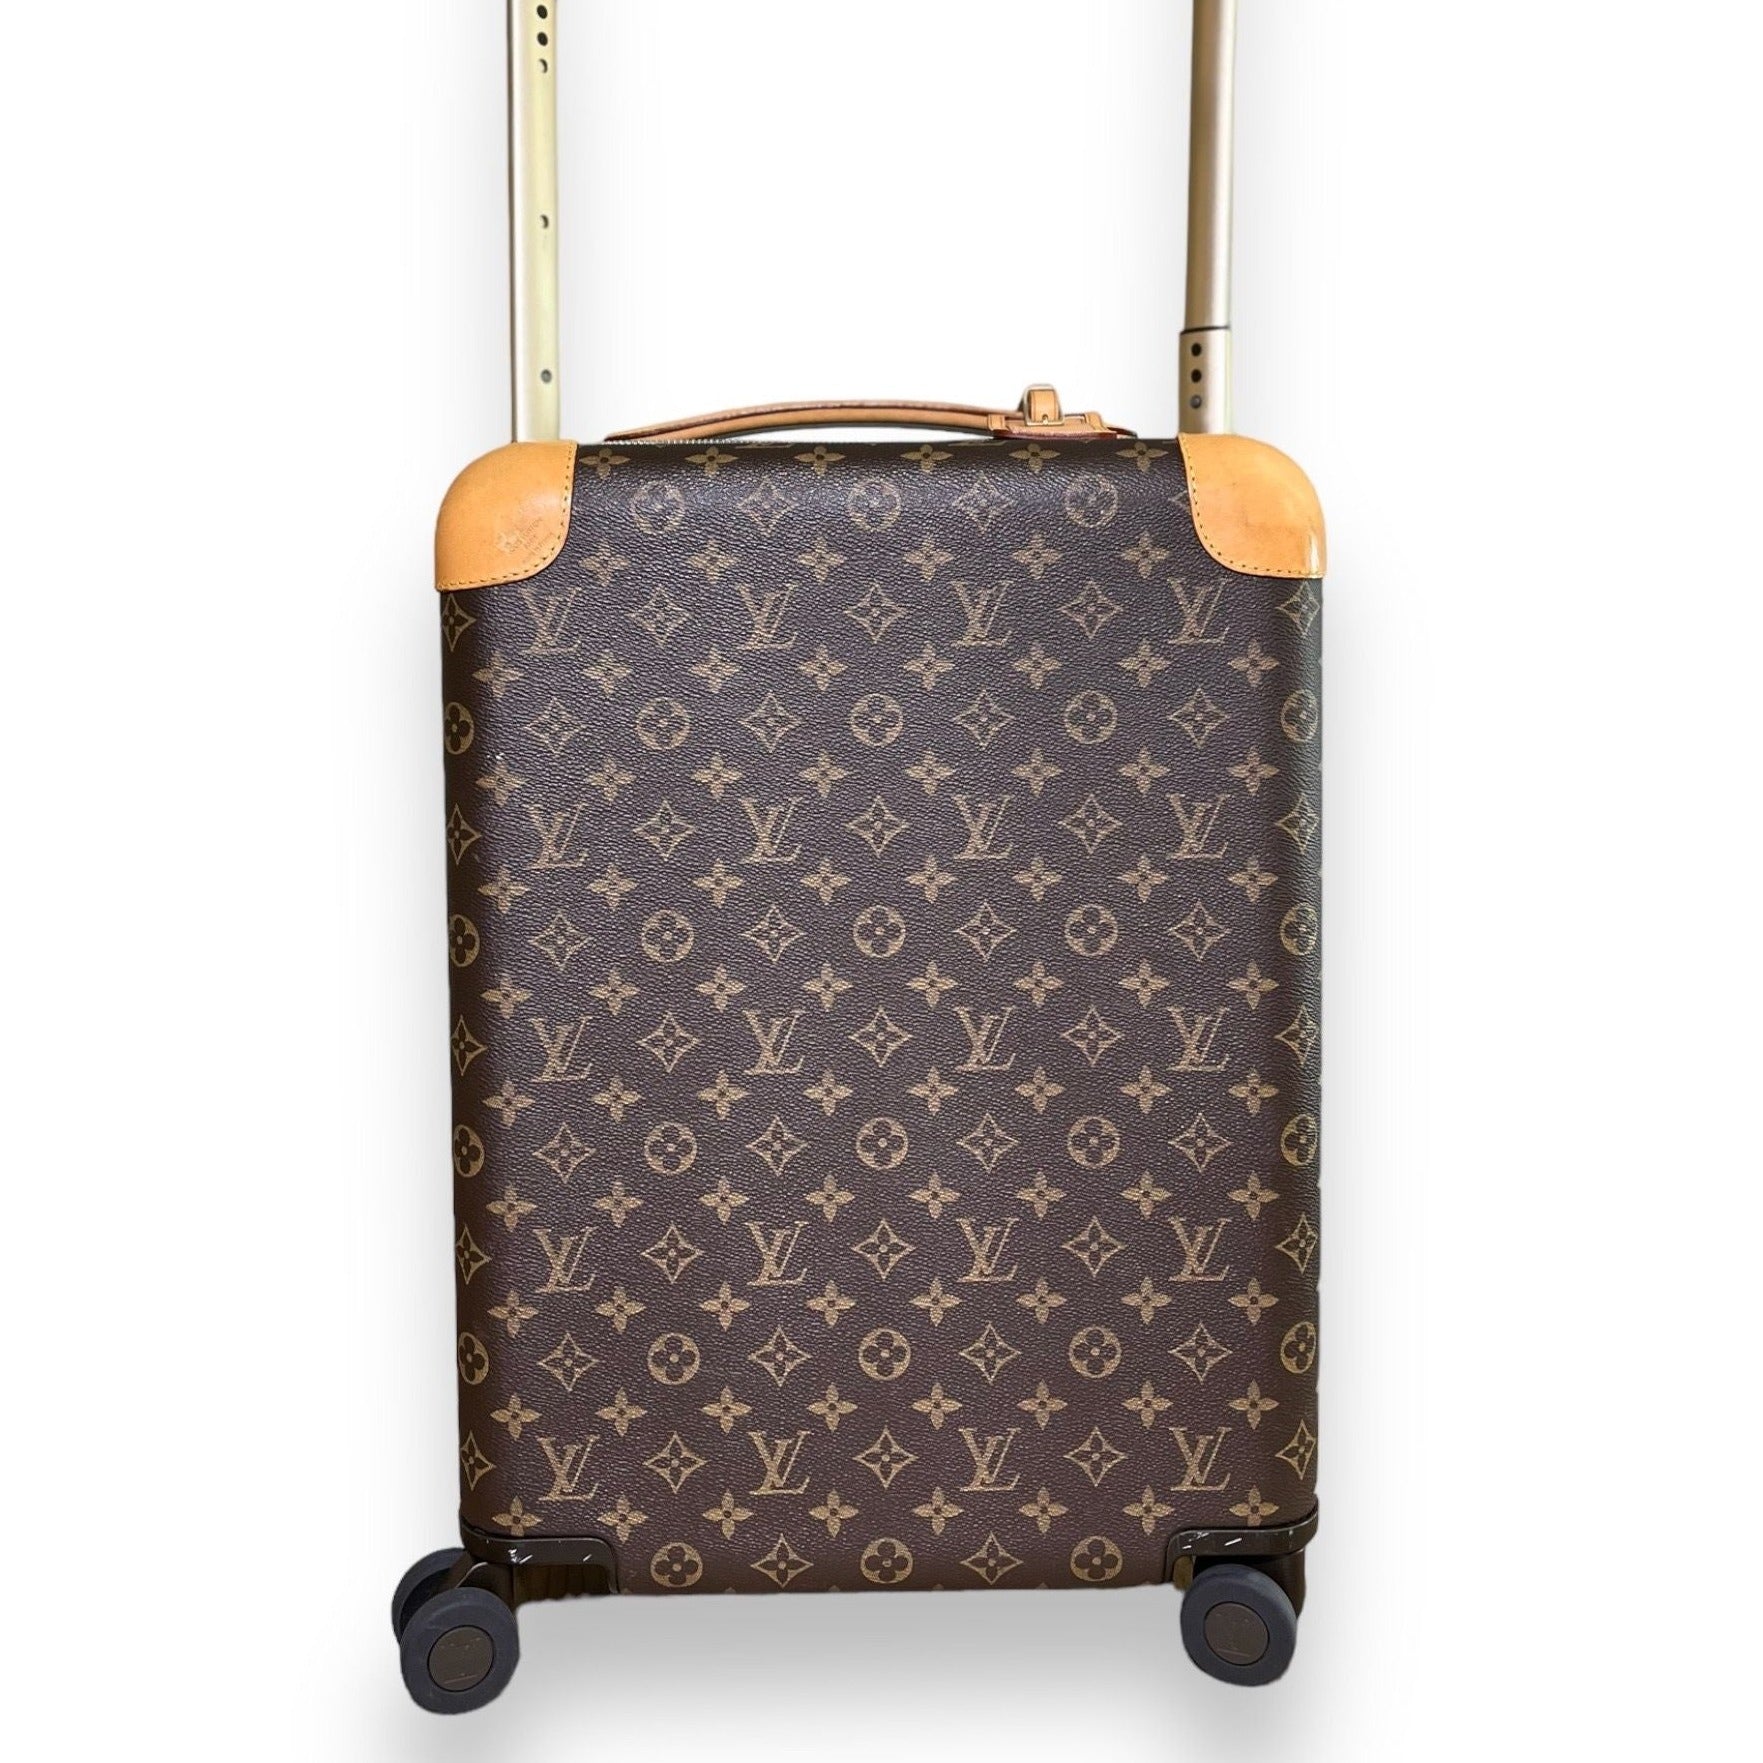 Lot - Louis Vuitton Monogram Horizon 50 rolling luggage suitcase